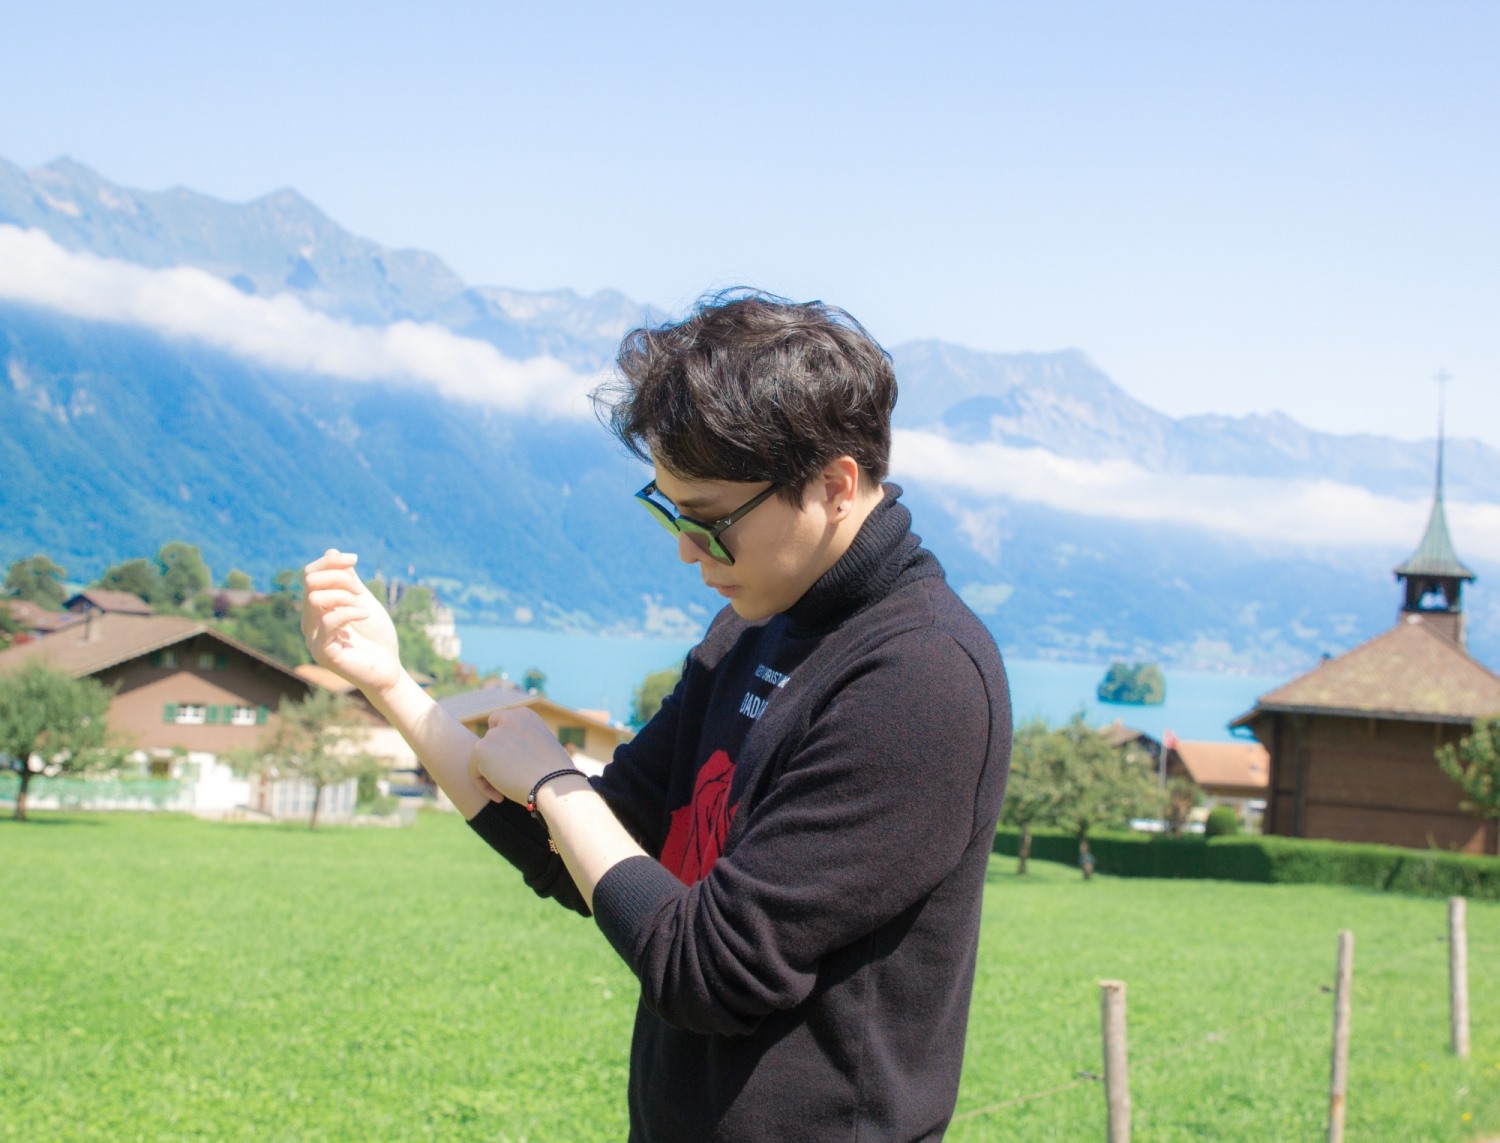 Fan choáng ngợp trước khung cảnh Thụy Sĩ đẹp như mơ trong MV của Trịnh Thăng Bình - Ảnh 3